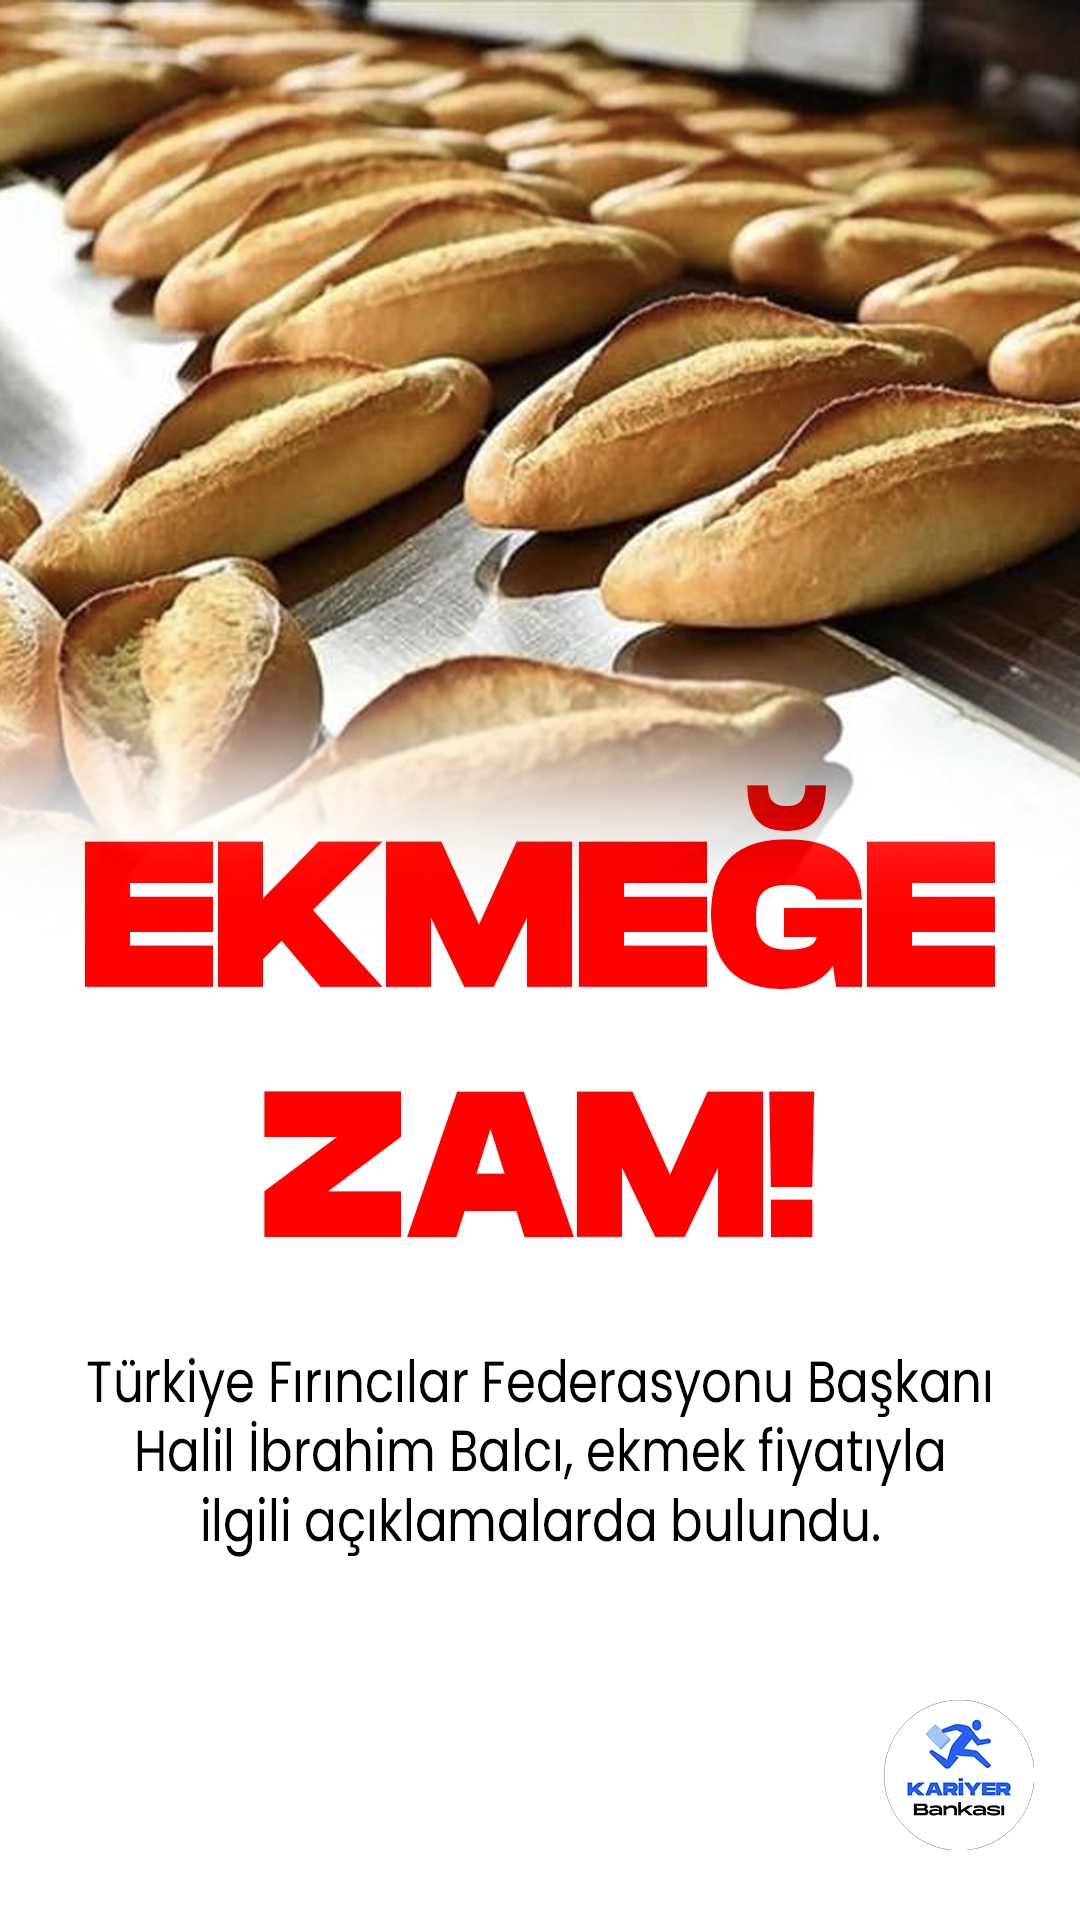 Türkiye Fırıncılar Federasyonu Başkanı Halil İbrahim Balcı, Temmuz ayı başından itibaren Türkiye genelinde ekmek fiyatlarının 7 ile 7.5 lira arasında olacağını duyurdu.